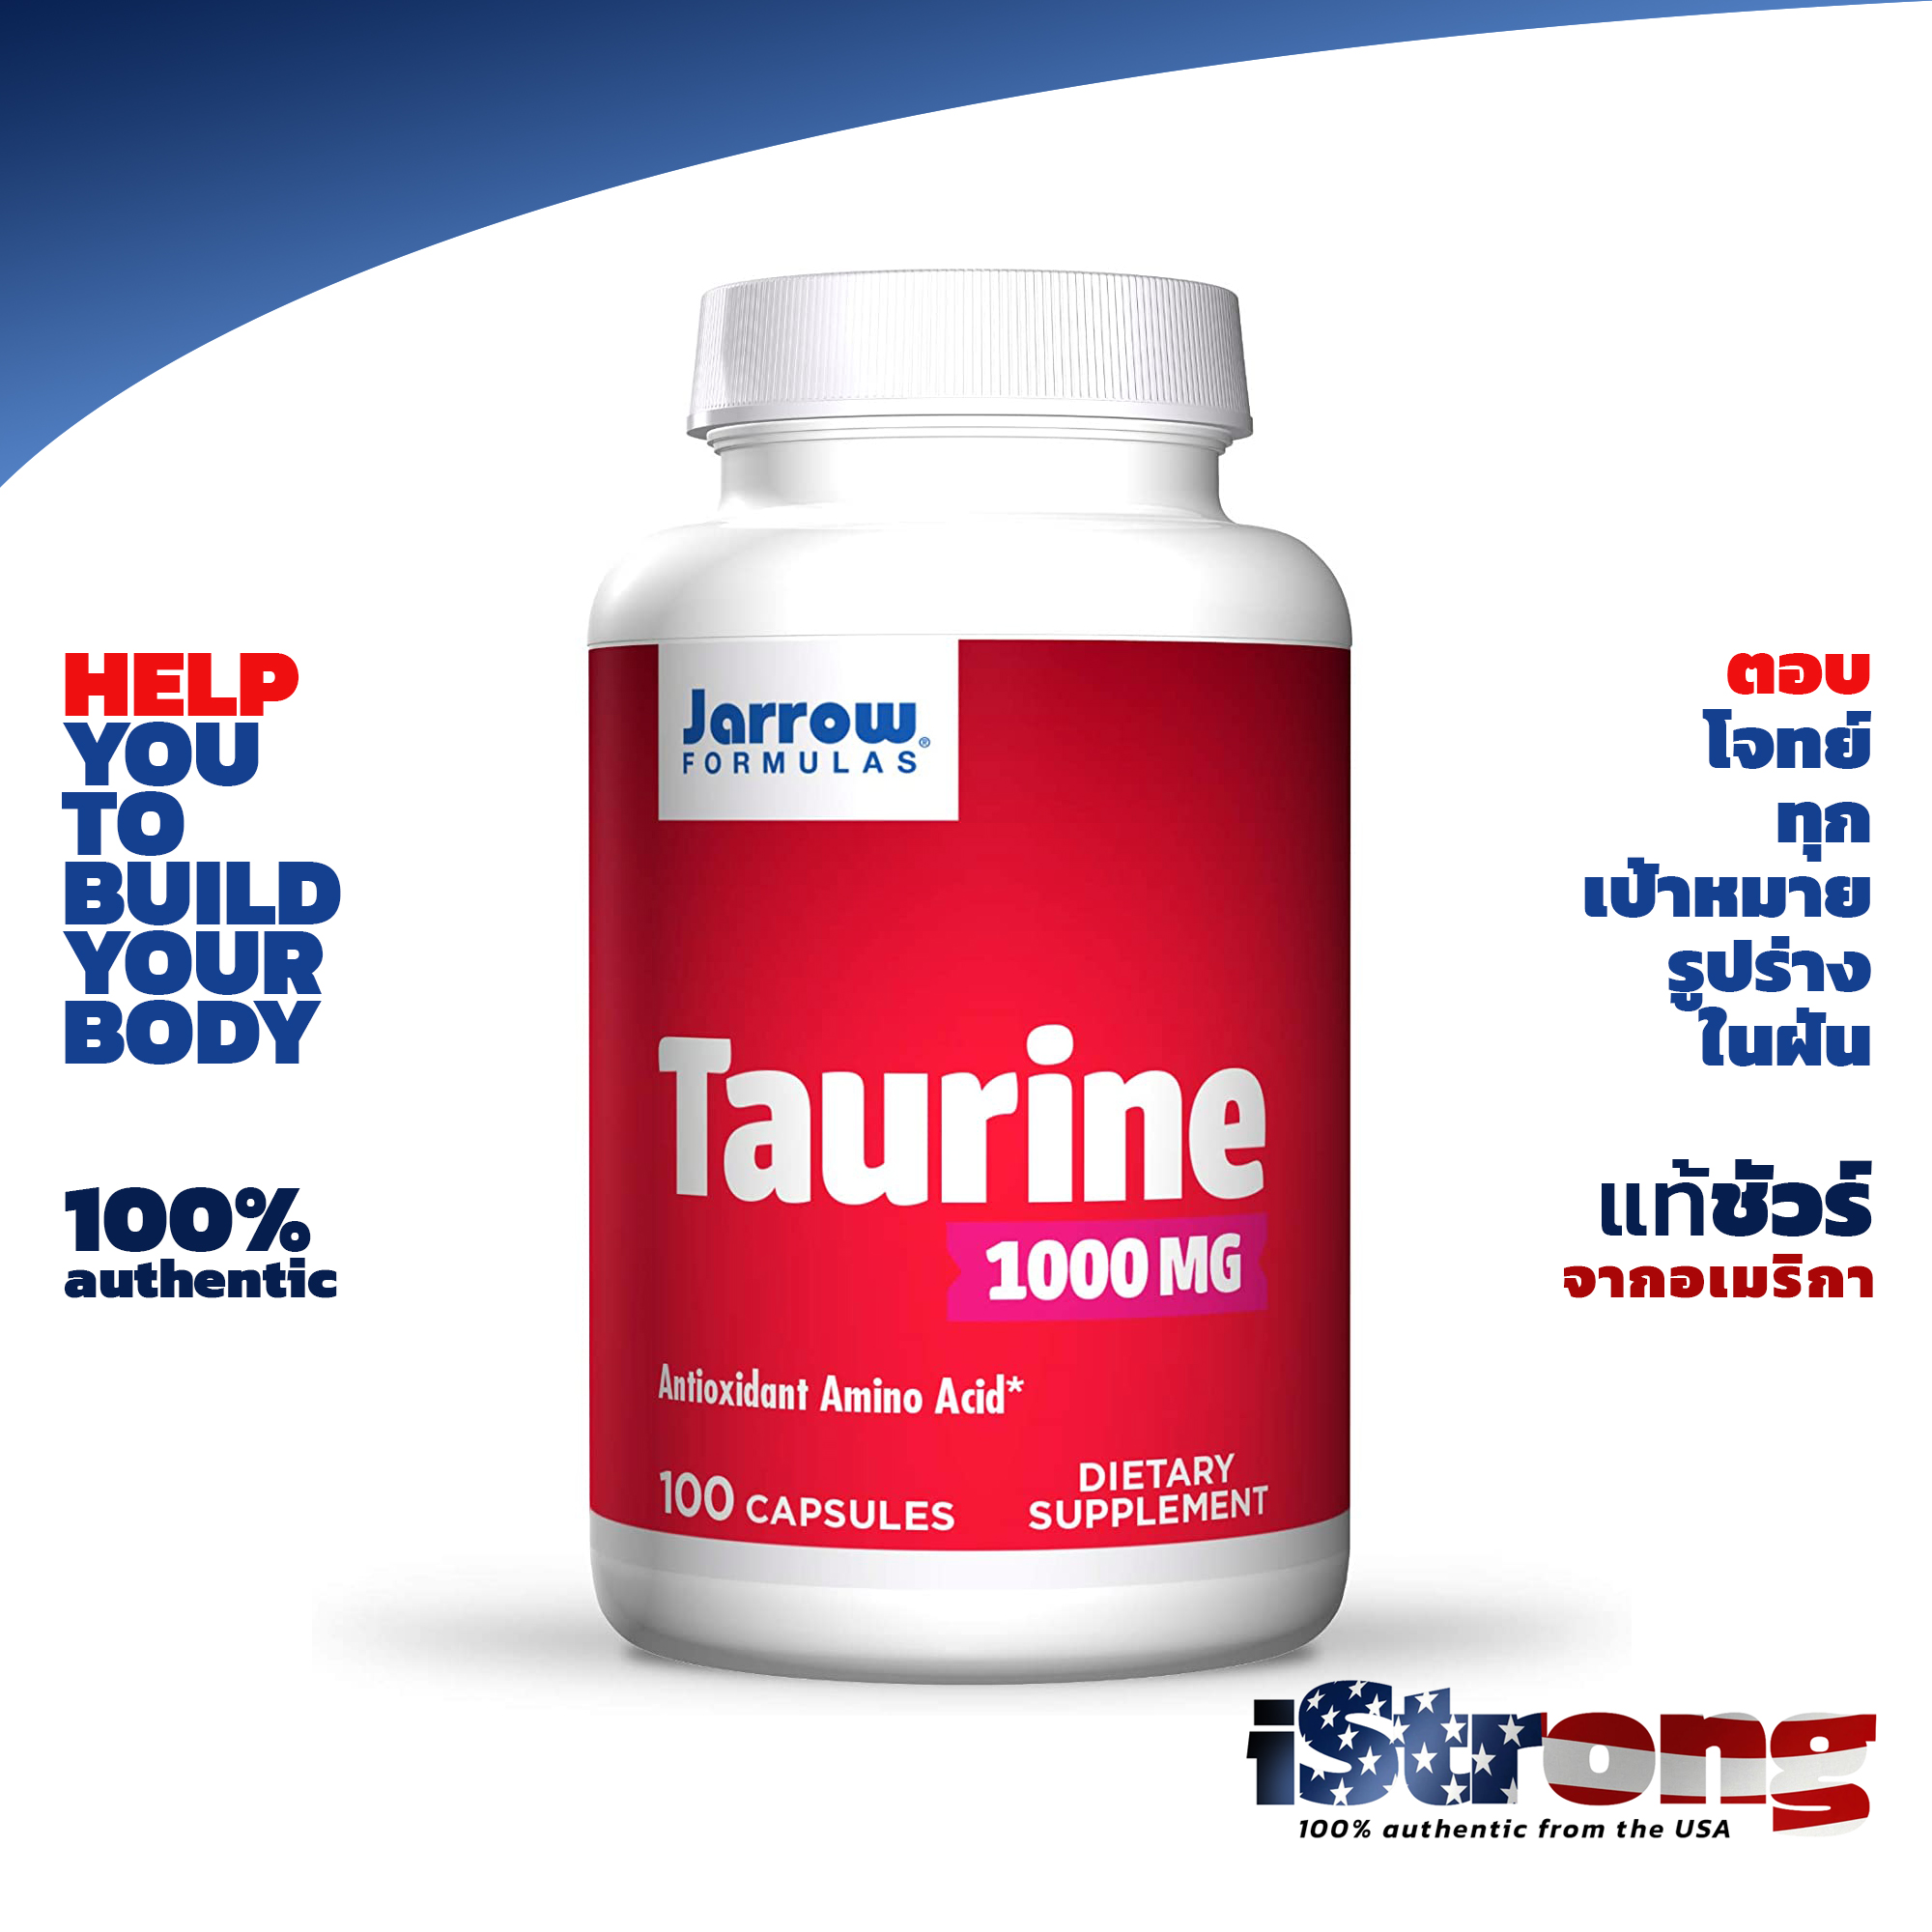 Jarrow Taurine 1000mg 100 Capsules ทอรีน ช่วยการทำงานระบบประสาท ของต่อมหมวกไต ทำหน้าที่หลั่งฮอร์โมนเพศ สร้างพลังงานให้ร่างกาย